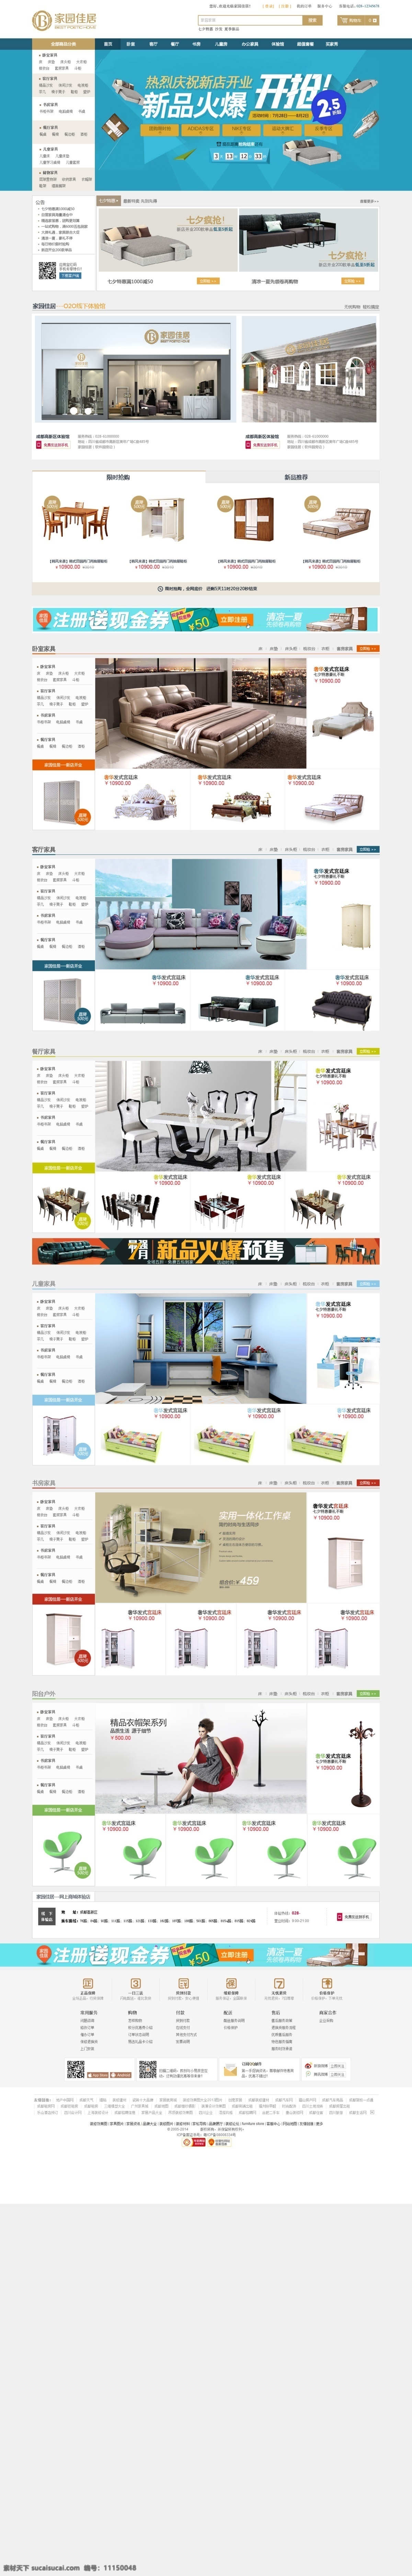 b2b家具 全 屏 海报 b2b 电子商务 家具行业 全屏海报 网页设计 原创设计 原创网页设计